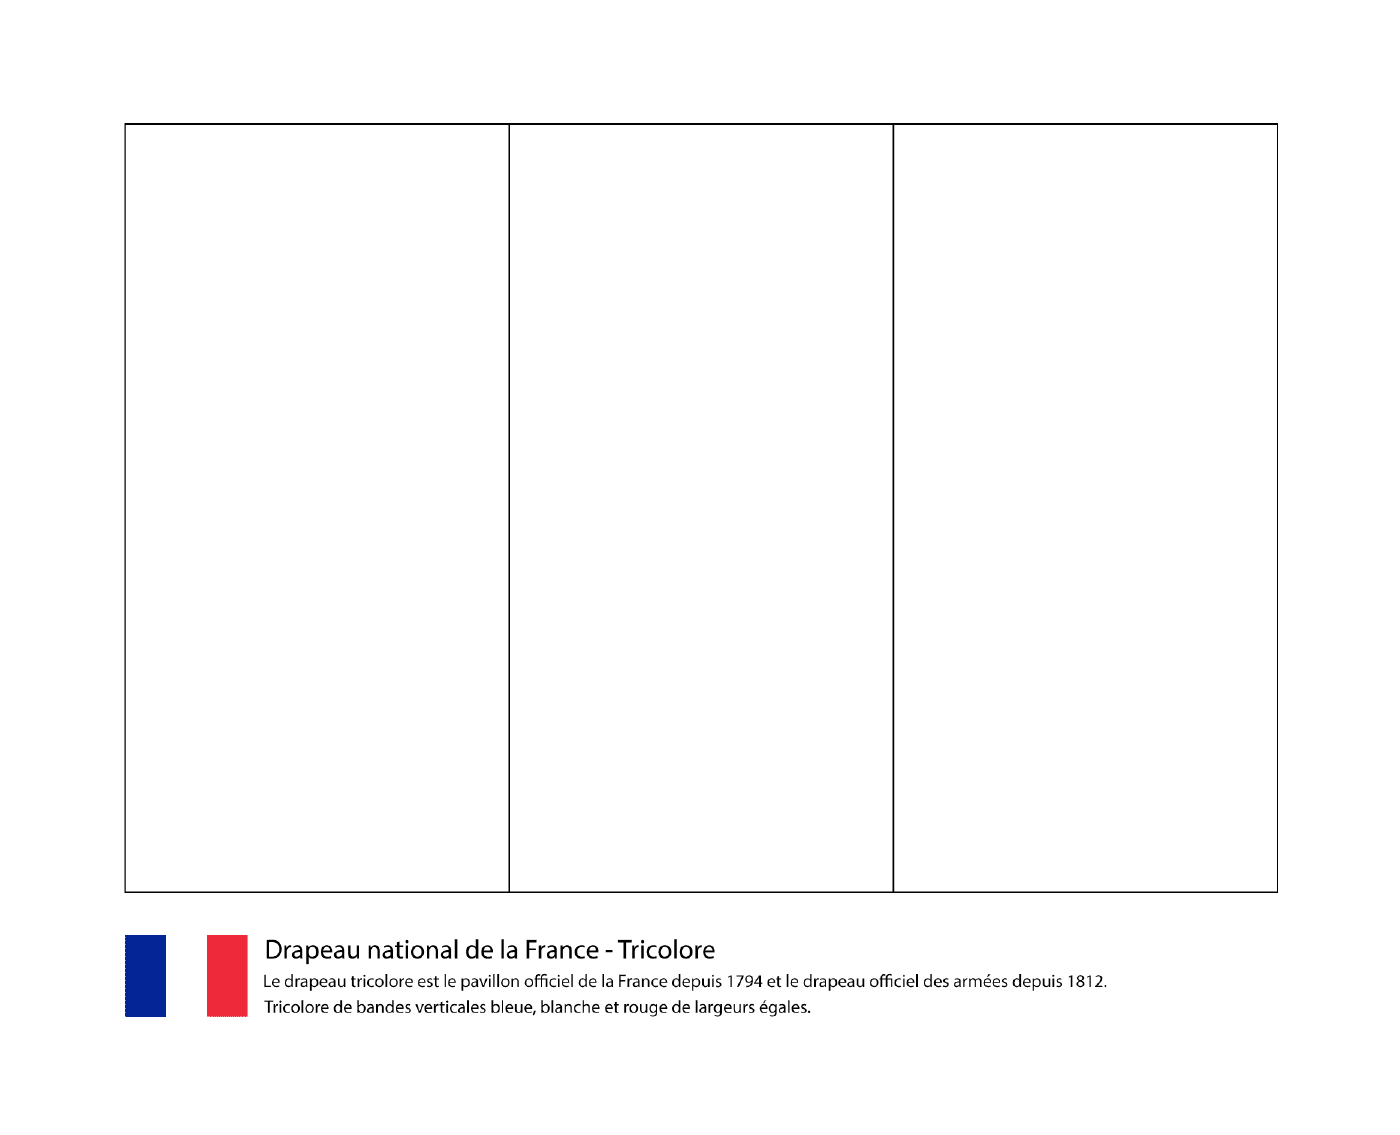   Drapeau tricolore de la France 